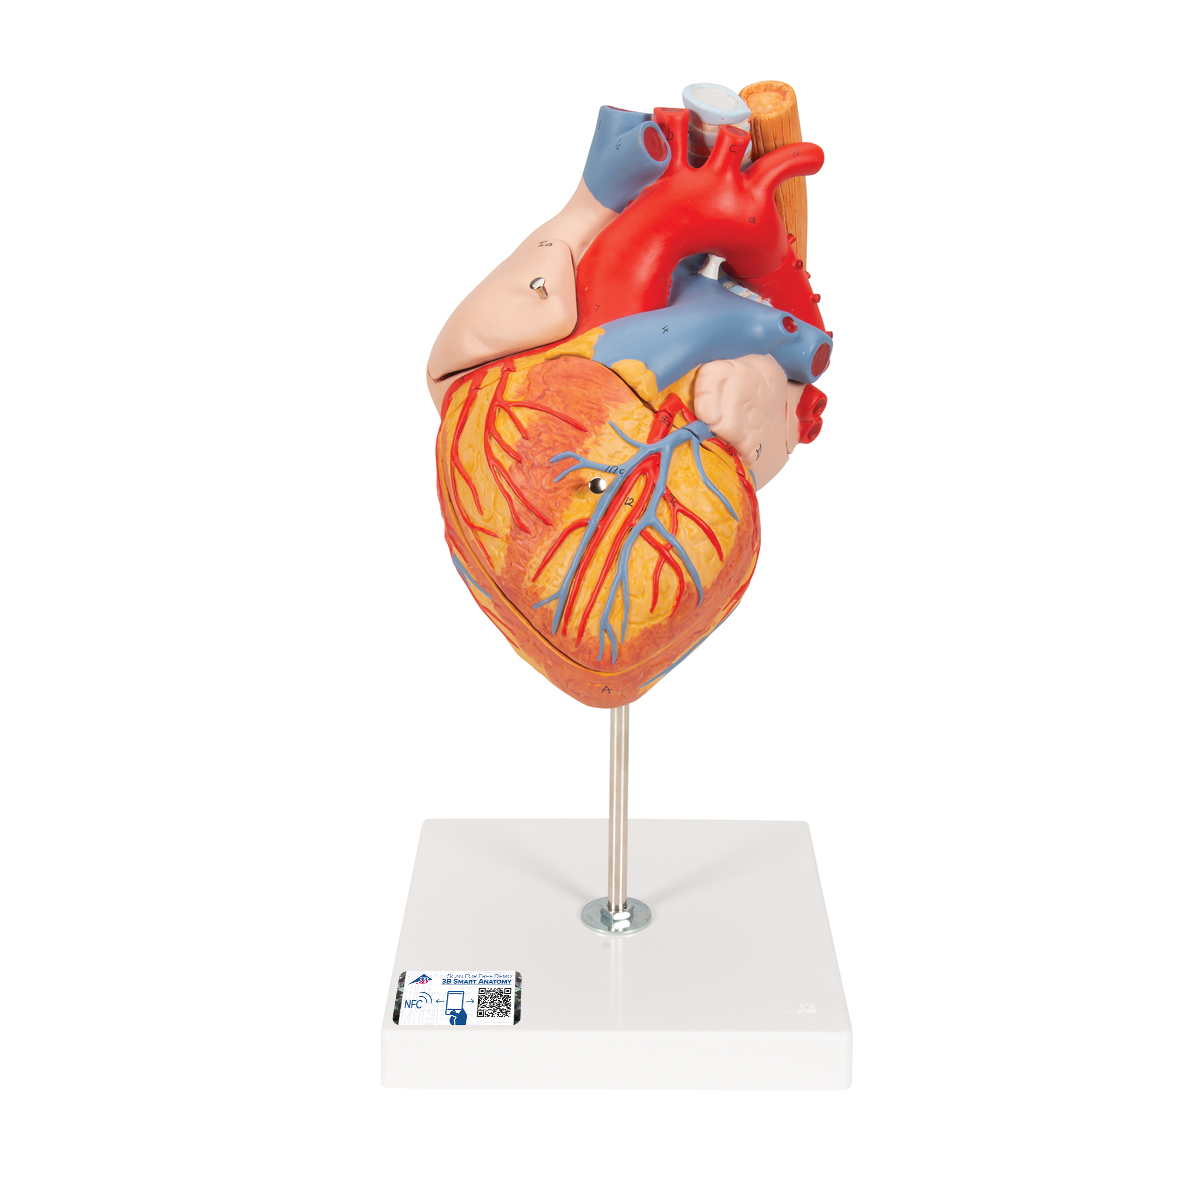 Herzmodell mit Luft- und Speiseröhre, 2-fache Größe, 5-teilig - 3B Smart Anatomy, Bestellnummer 1000269, G13, 3B Scientific